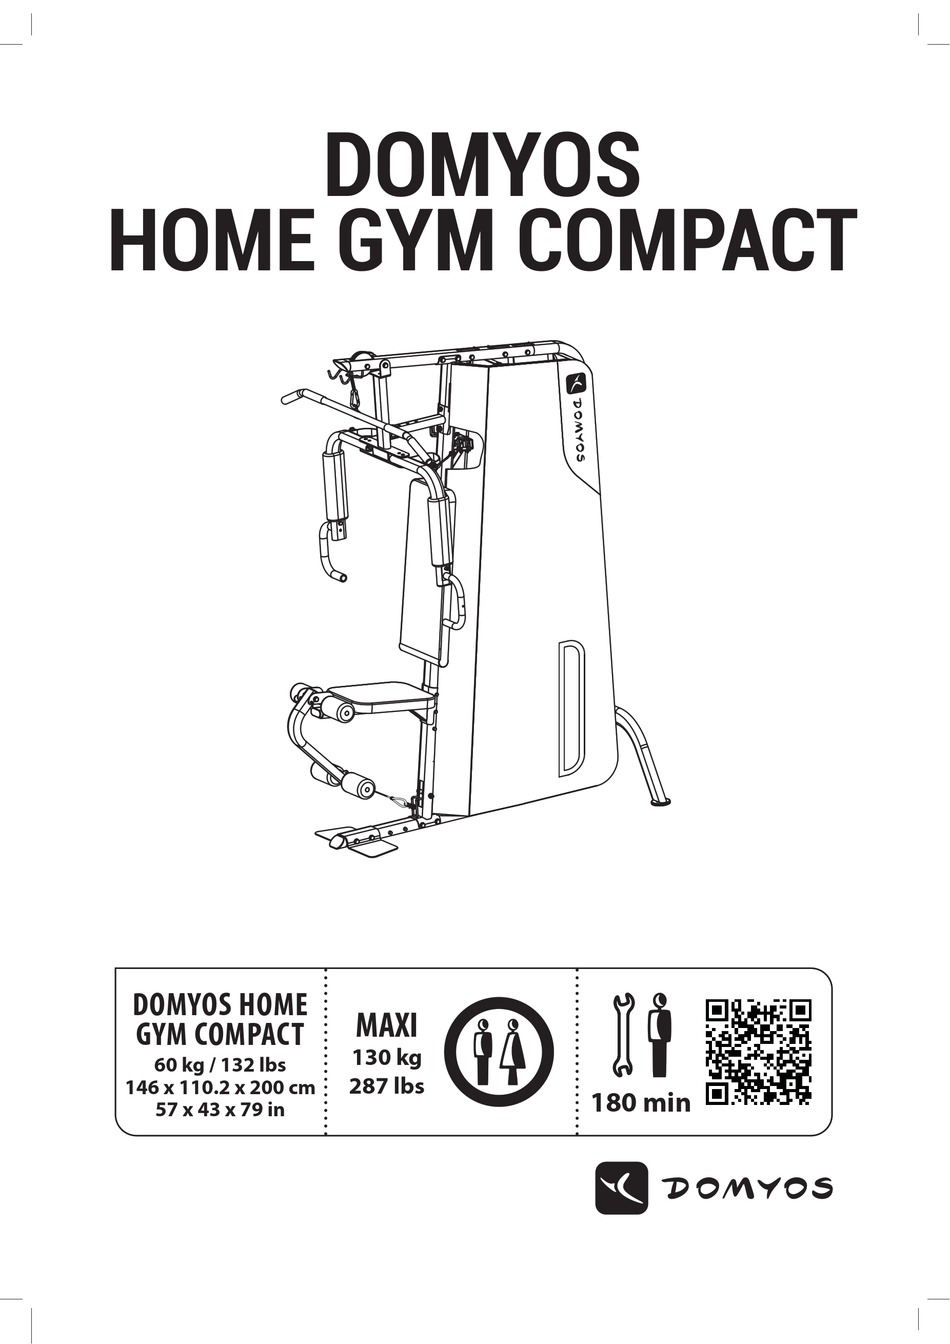 gym compact domyos